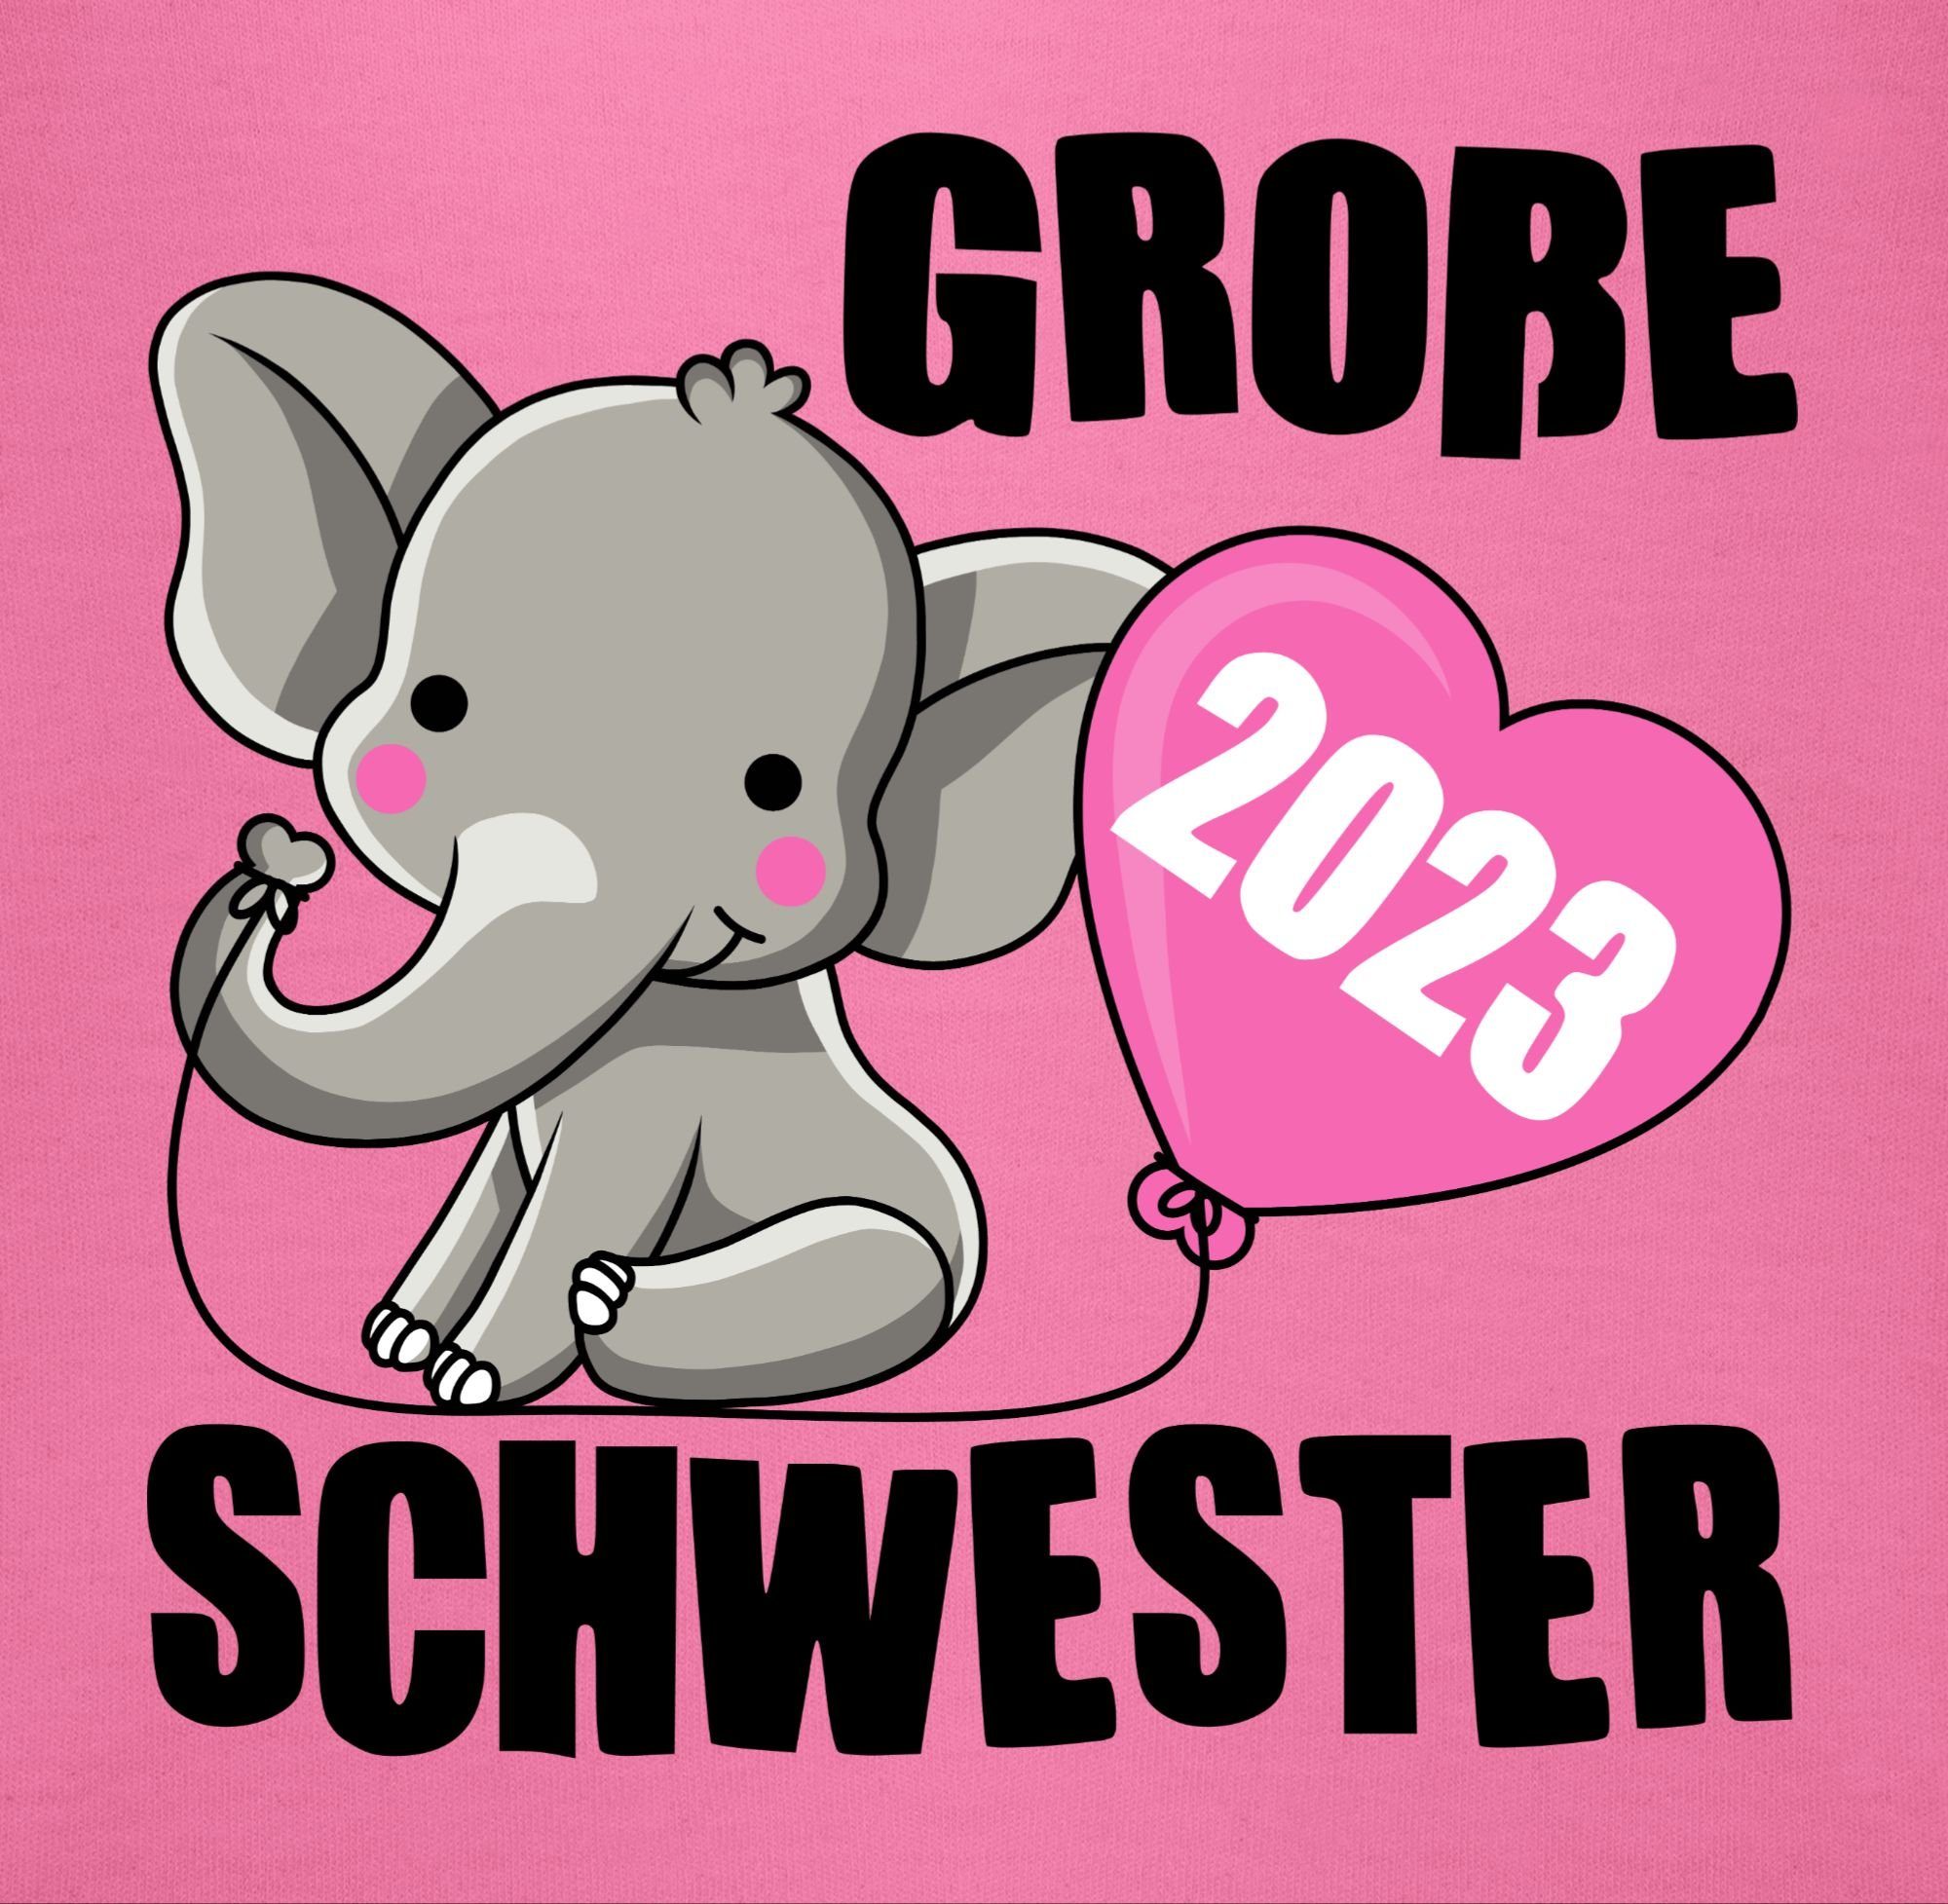 Bruder Schwester I Geschwister Sweatshirt Pink Große und Schwester 1 2023 Shirtracer